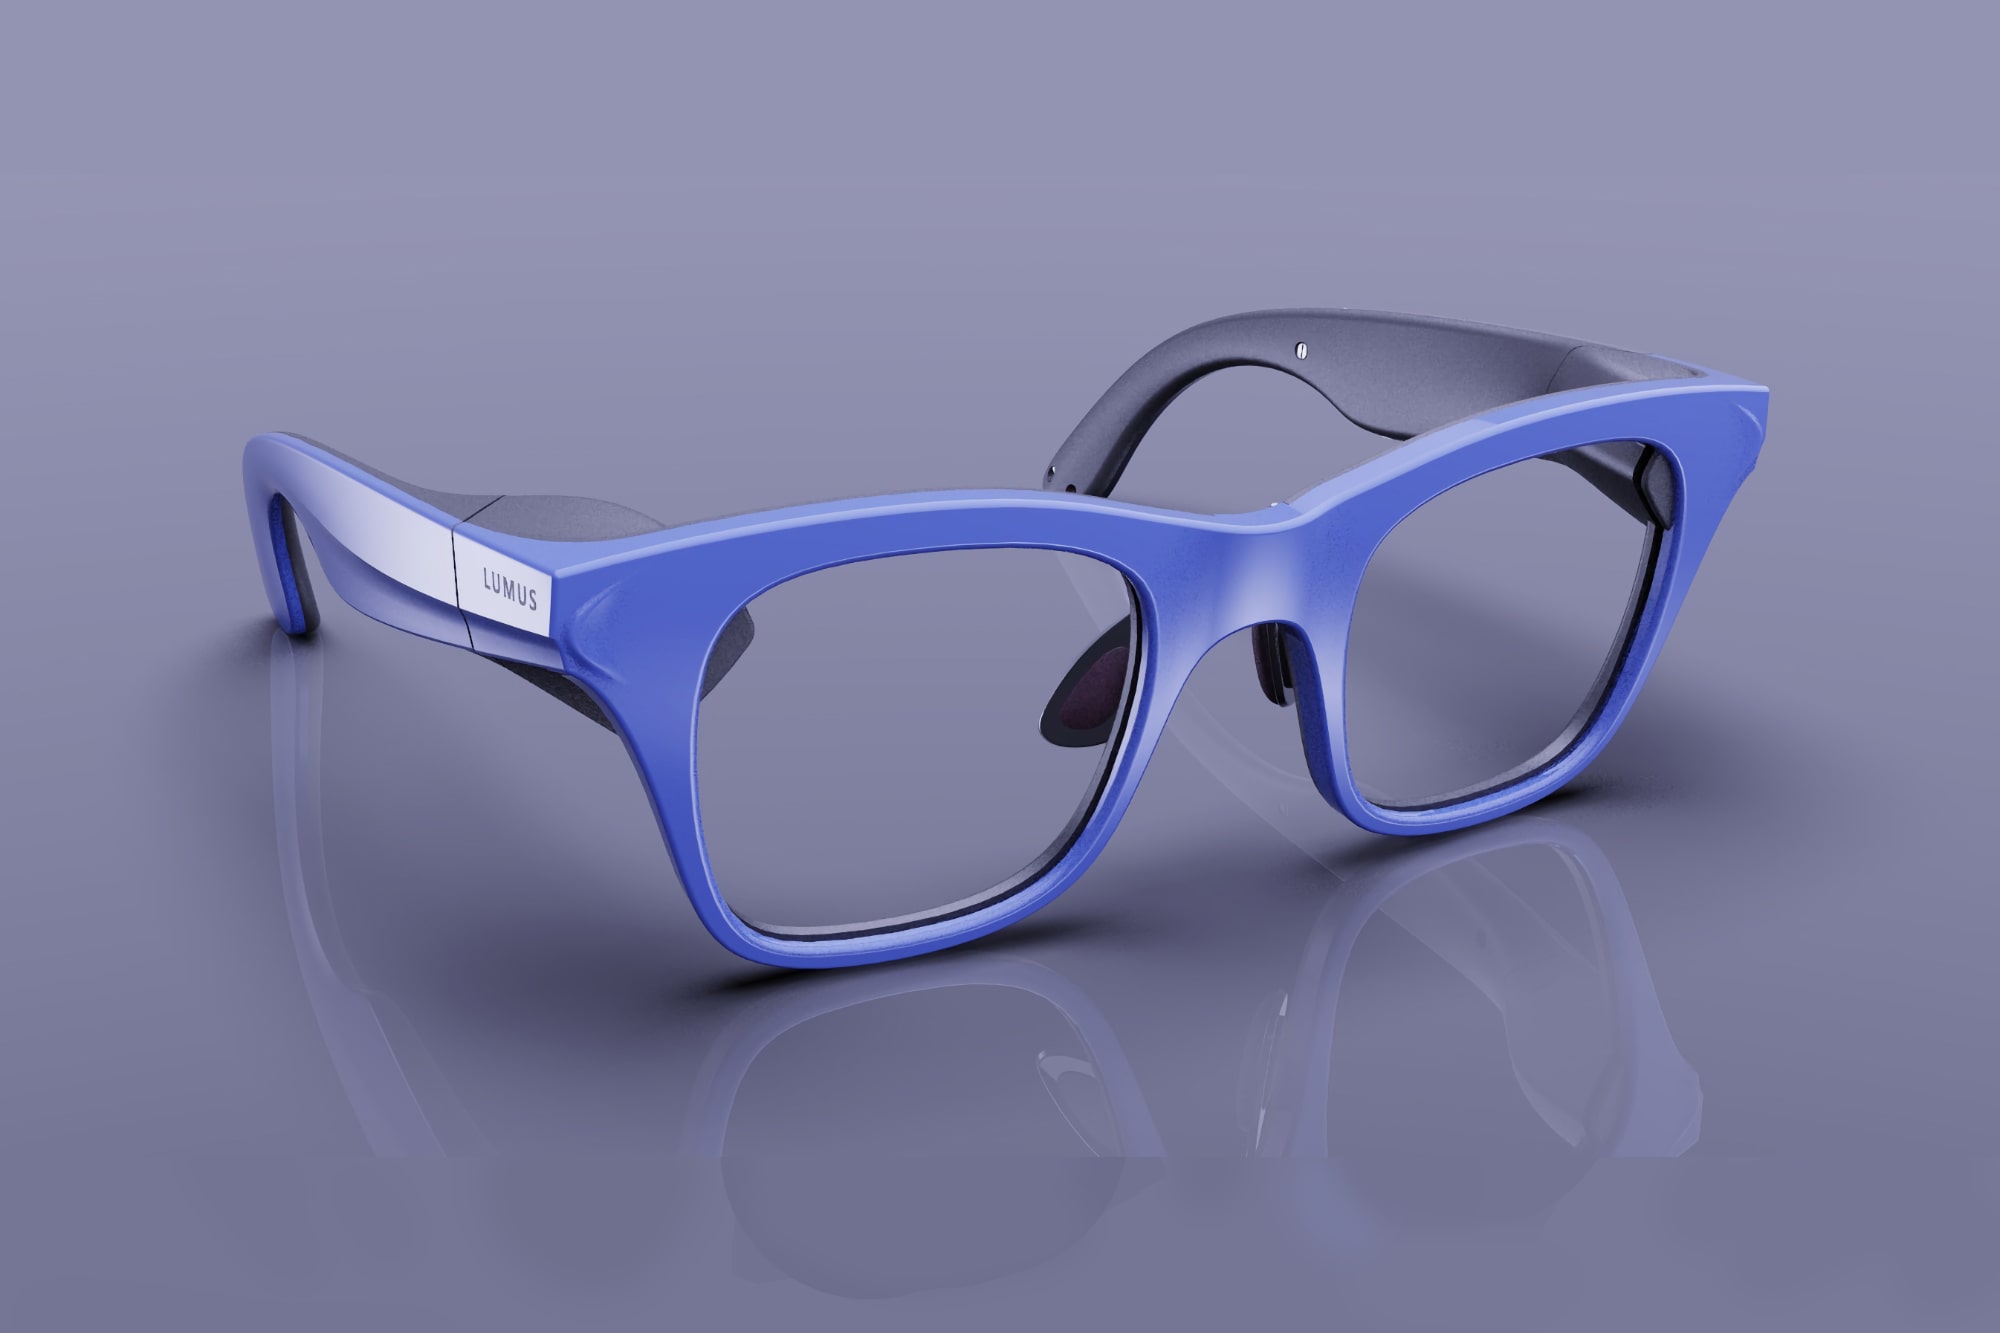 La guía de ondas Lumus Z-Lens permite gafas AR delgadas y elegantes